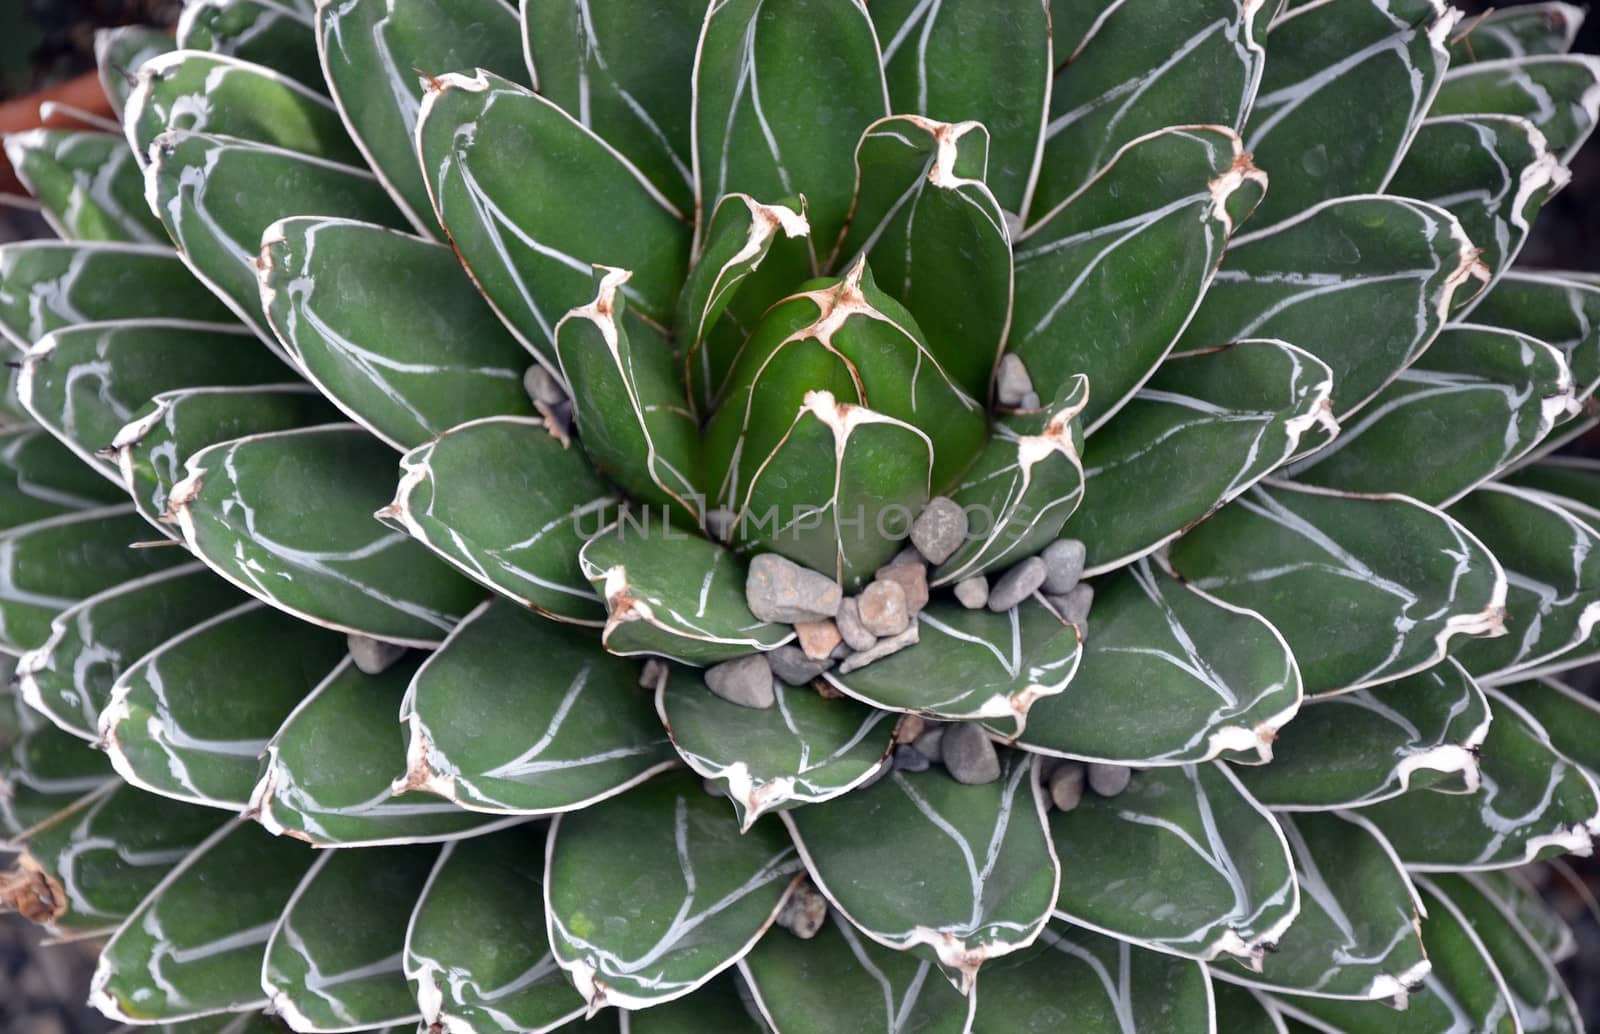 Cactus leaves close up